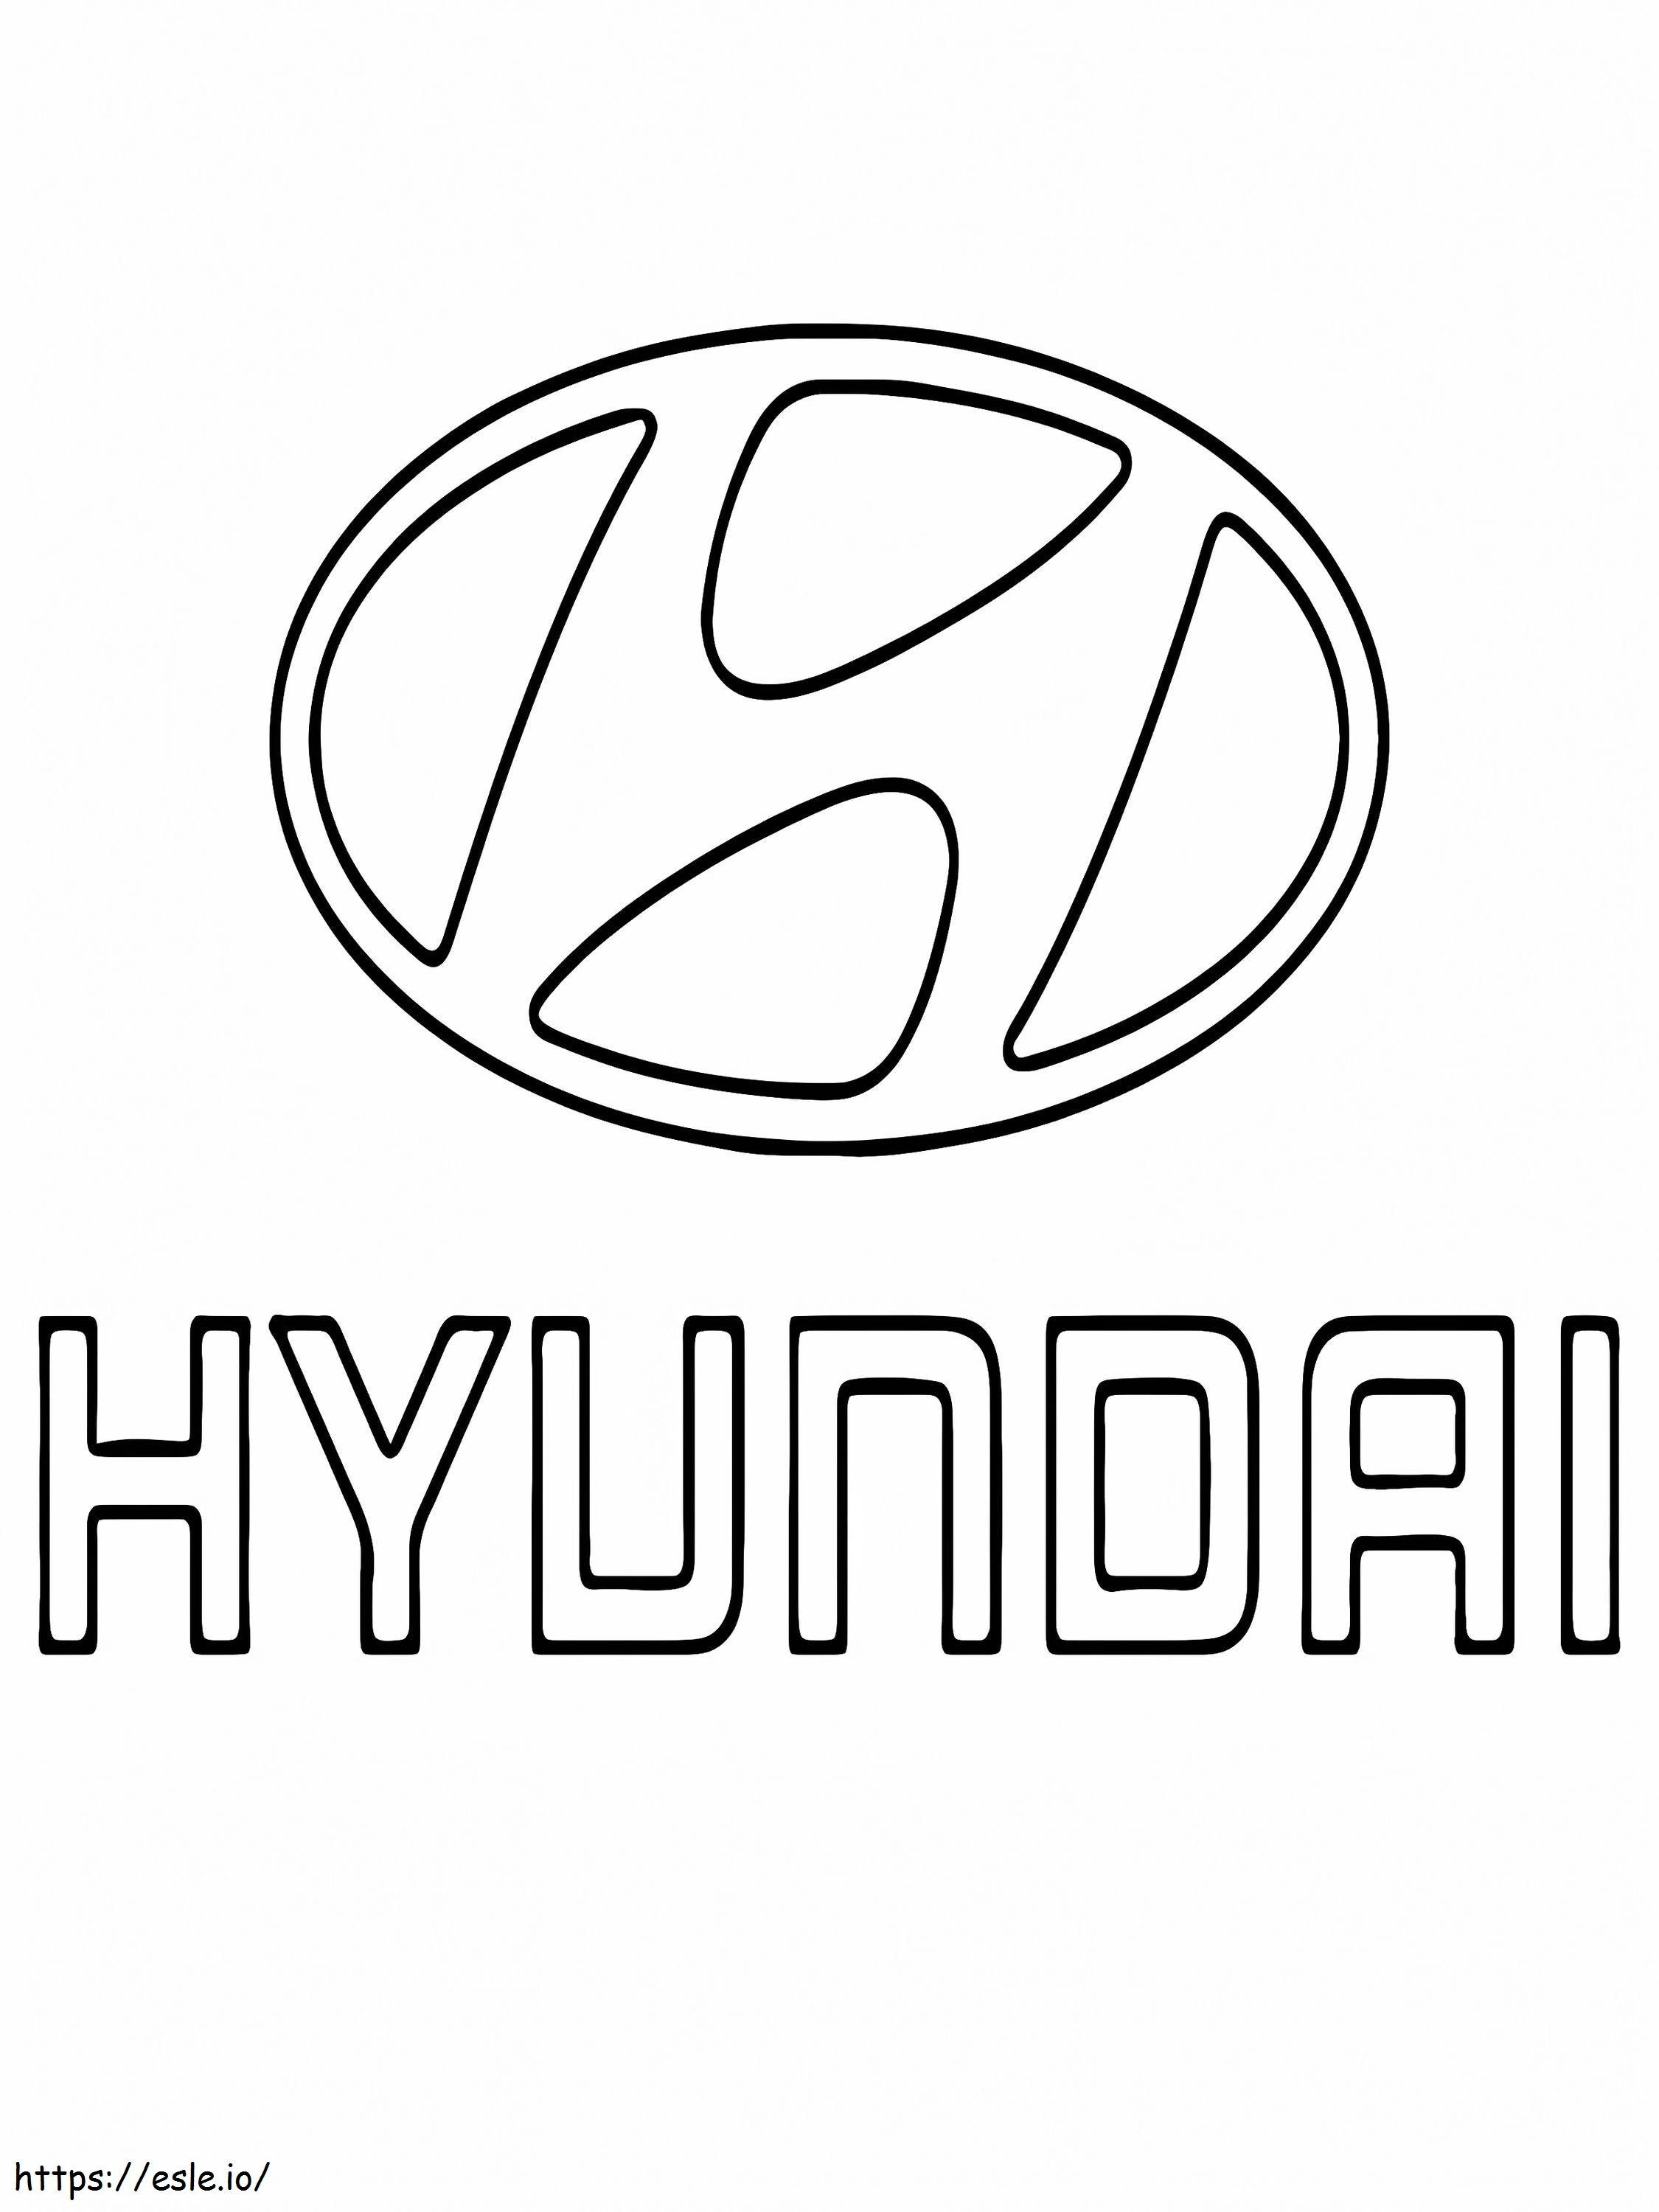 Logo dell'auto Hyundai da colorare